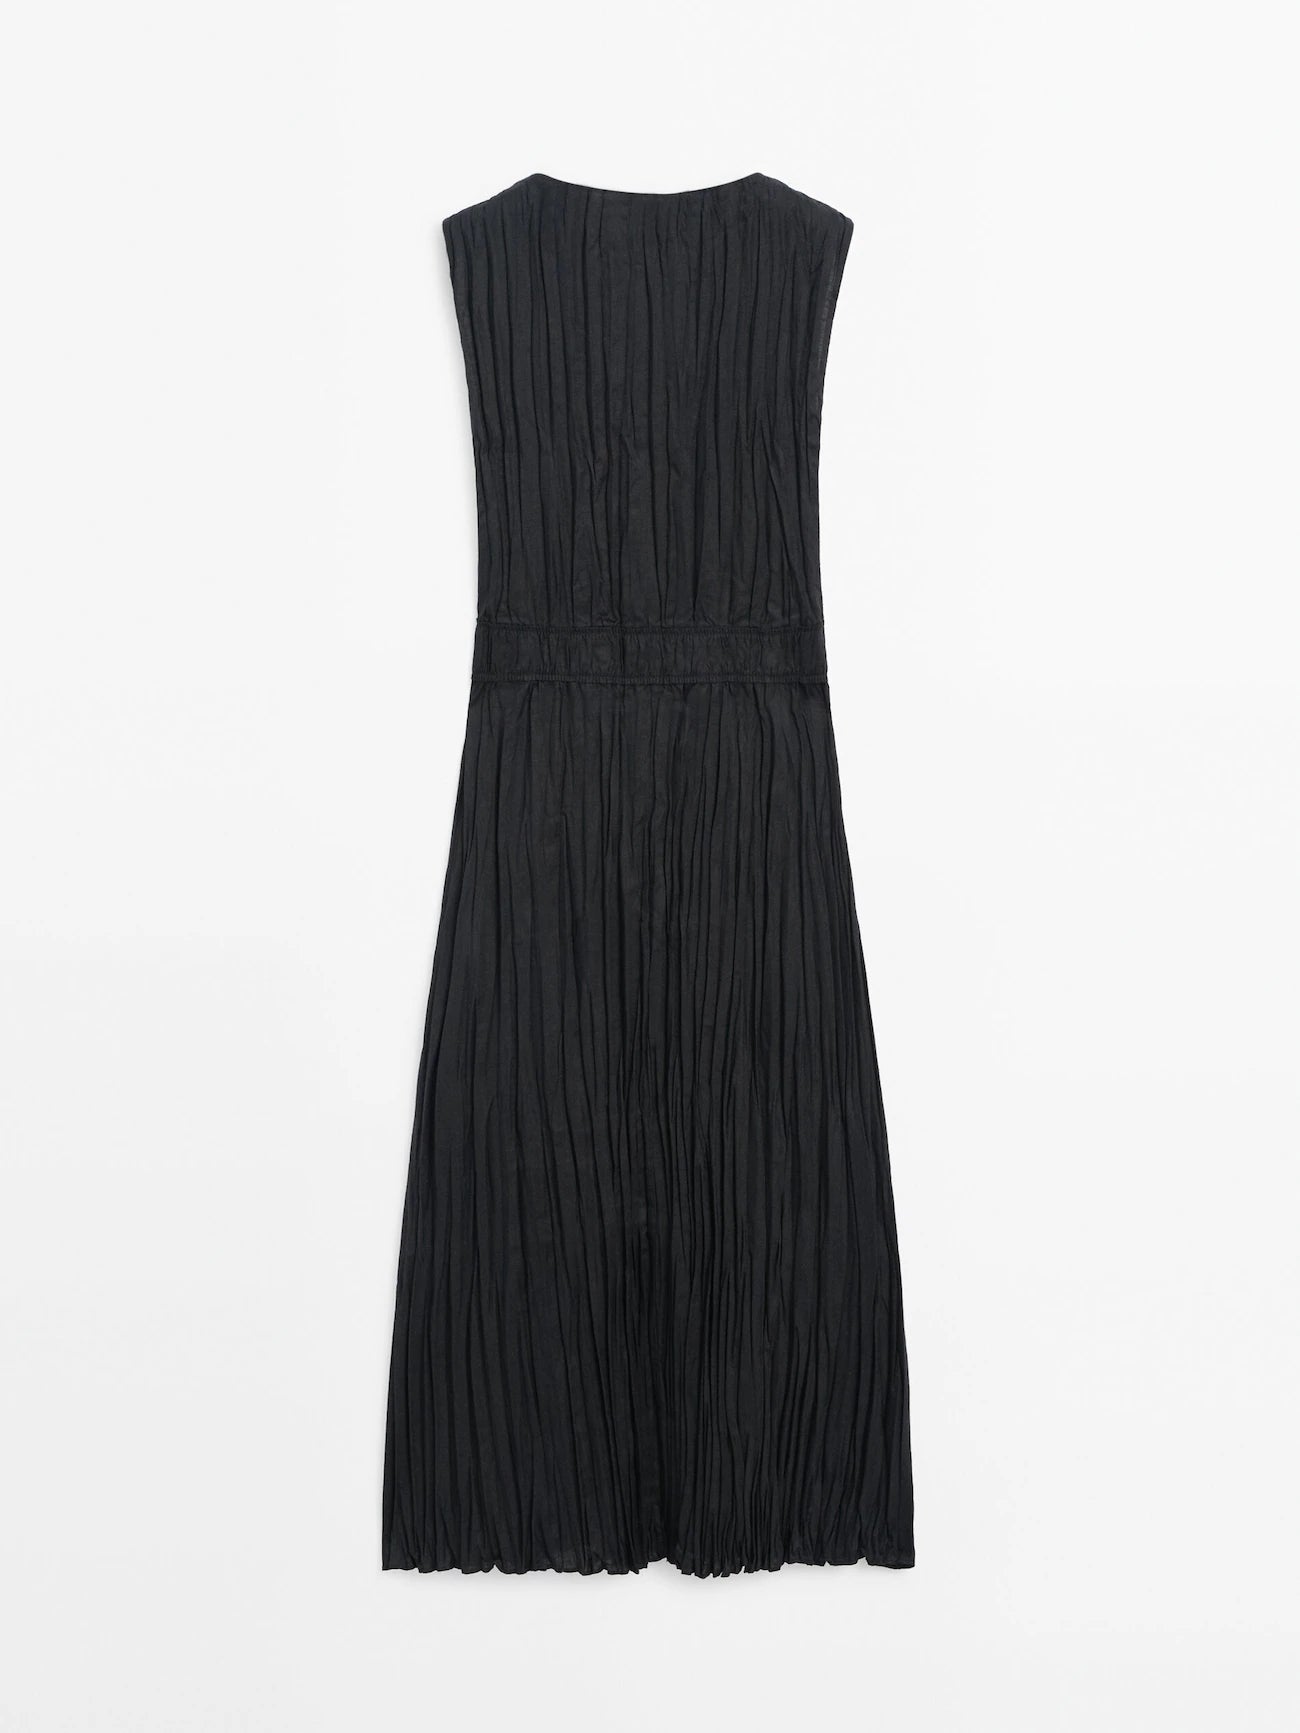 Pleated black dress